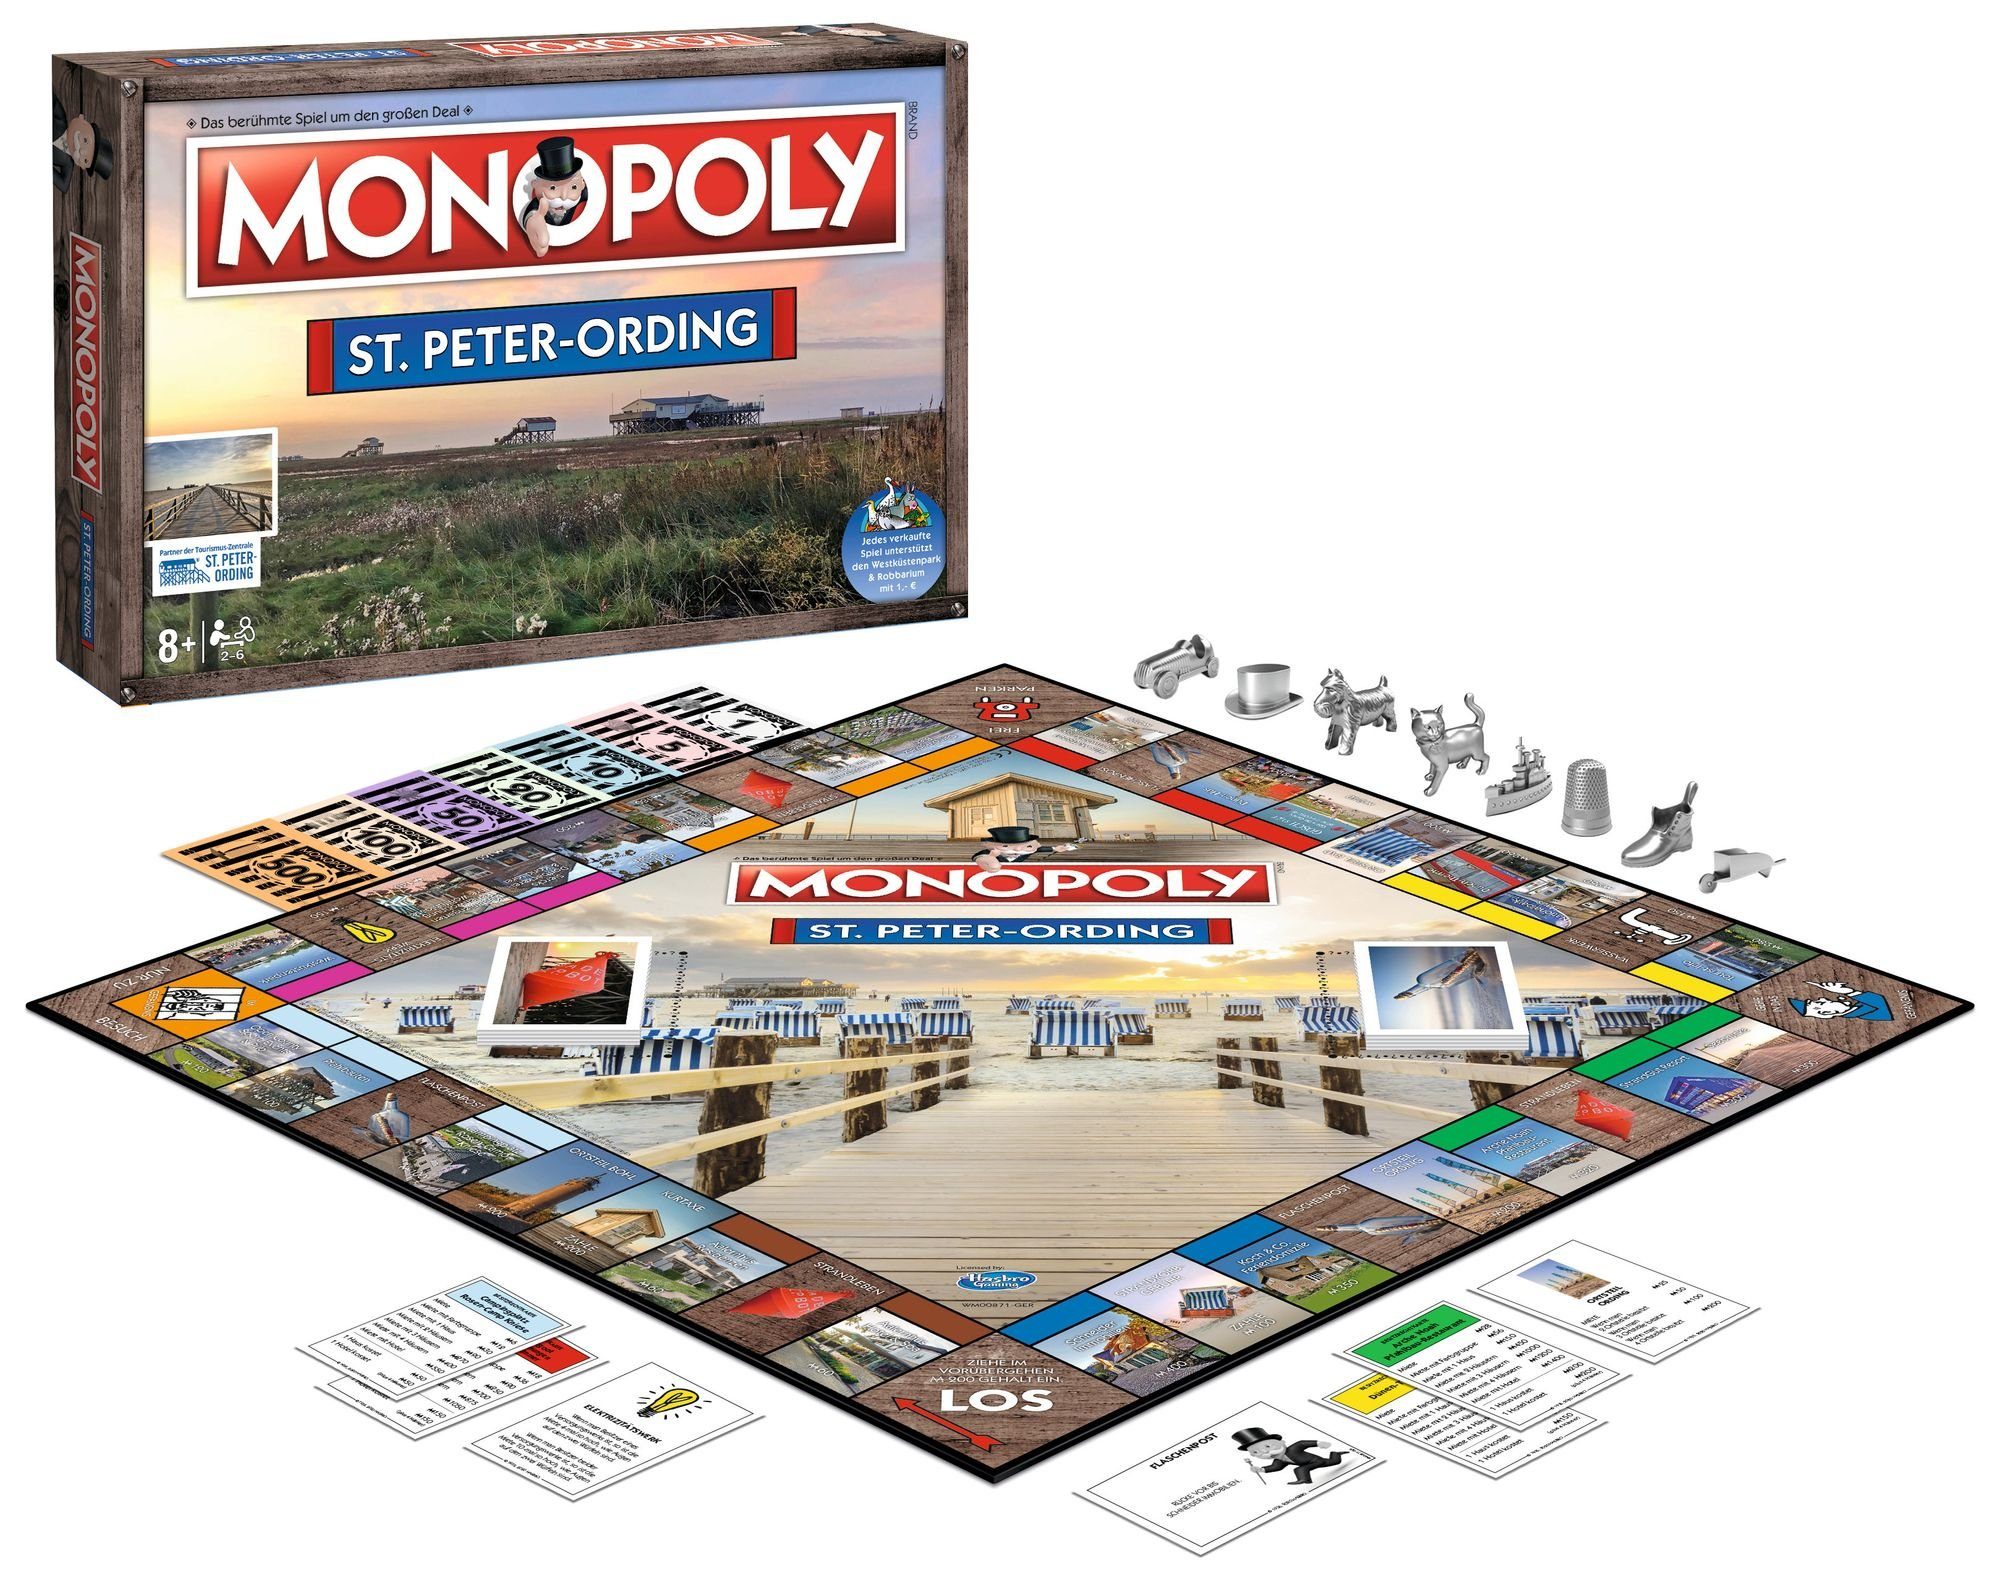 Peter-Ording Winning Brettspiel Spiel, St. Monopoly Moves